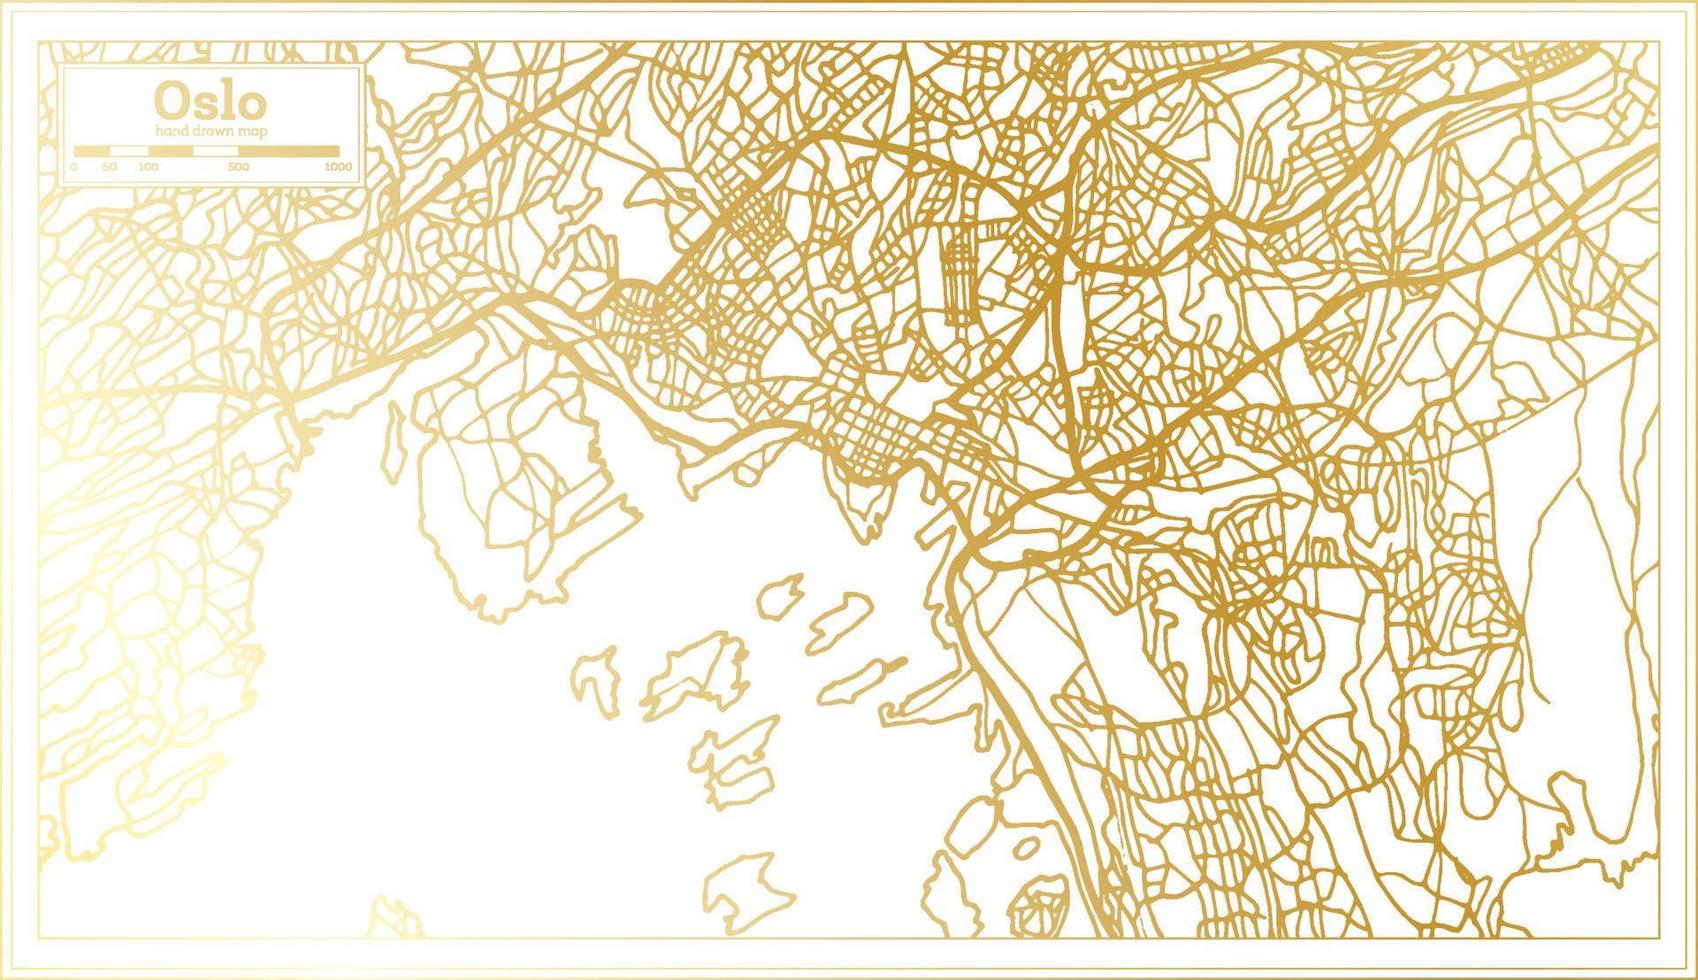 Oslo Noorwegen stad kaart in retro stijl in gouden kleur. schets kaart. vector